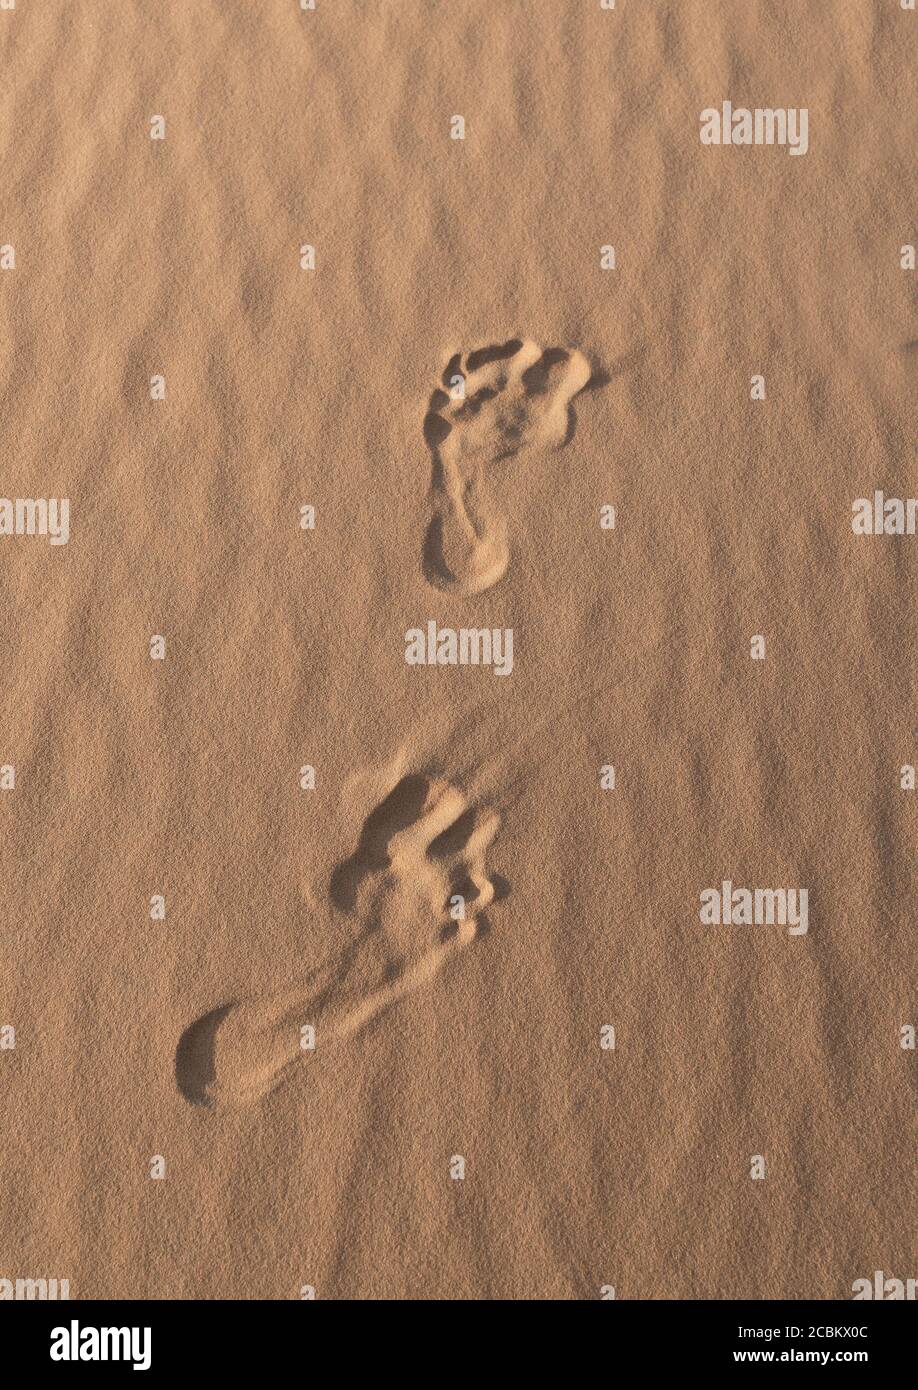 Orme nella sabbia, close-up Foto Stock